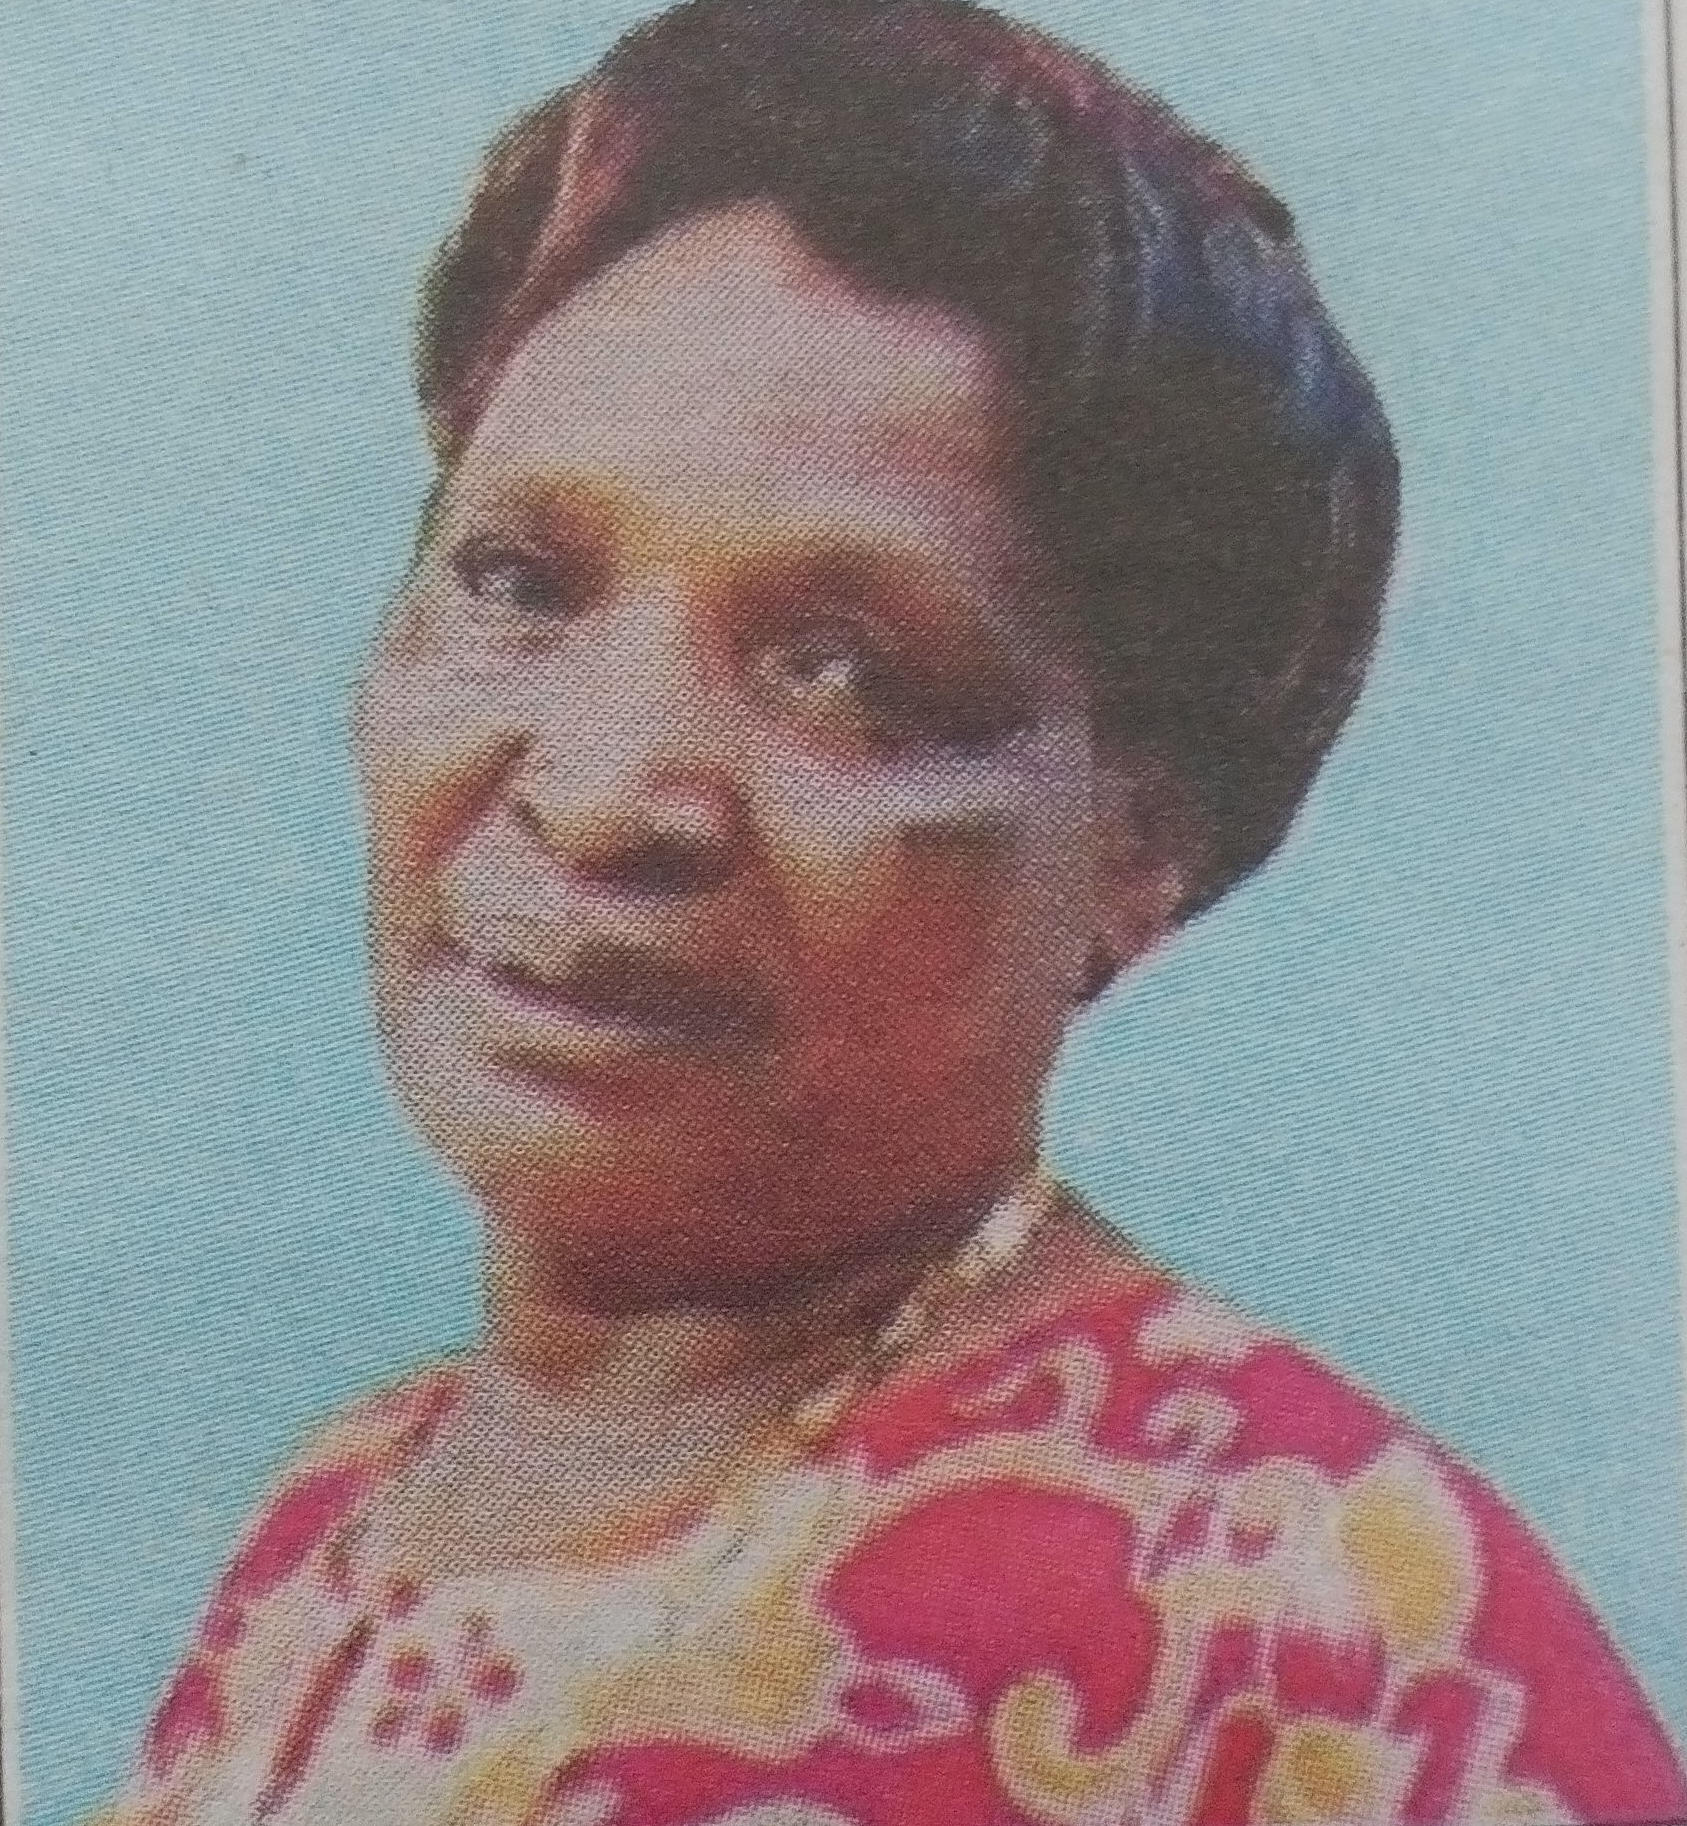 Obituary Image of Rebecca Kanana Kimathi